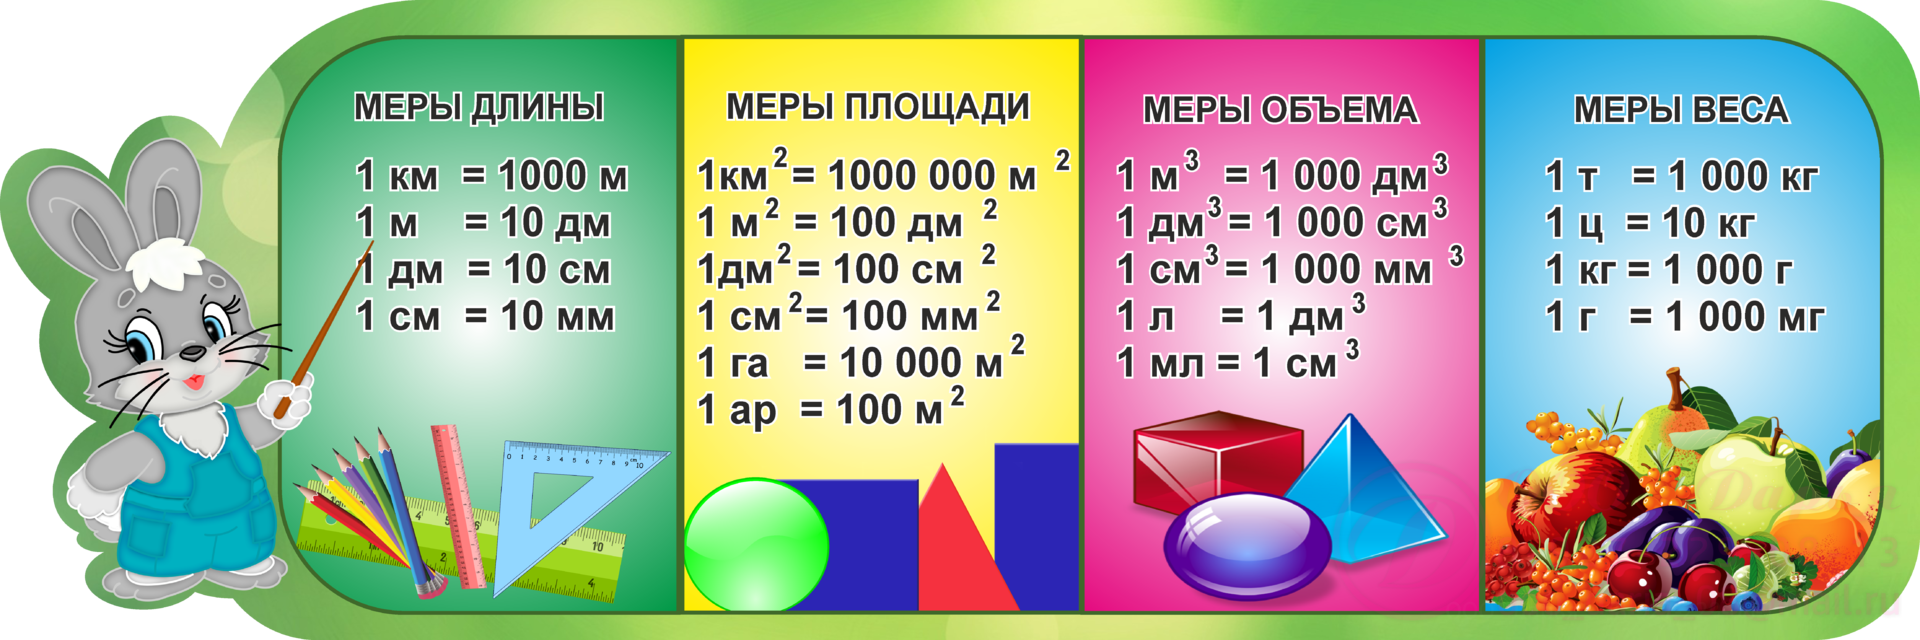 Меры измерения длины таблица. Таблица мер математика 3 класс. Единицы измерения длины площади массы таблица. Меры длины площади массы объема таблица для школьников.